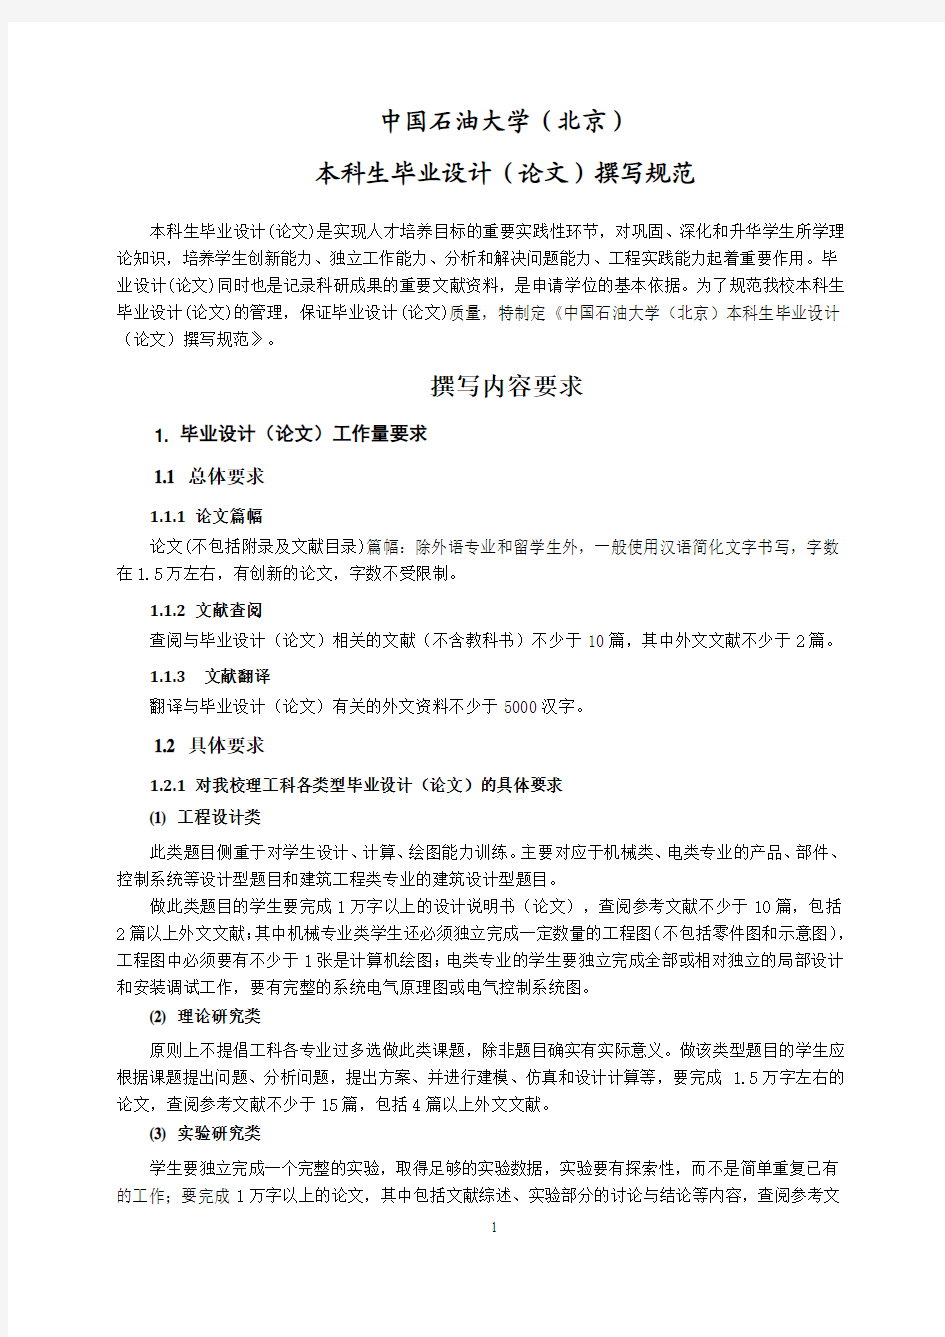 中国石油大学(北京)本科毕业设计(论文)撰写规范